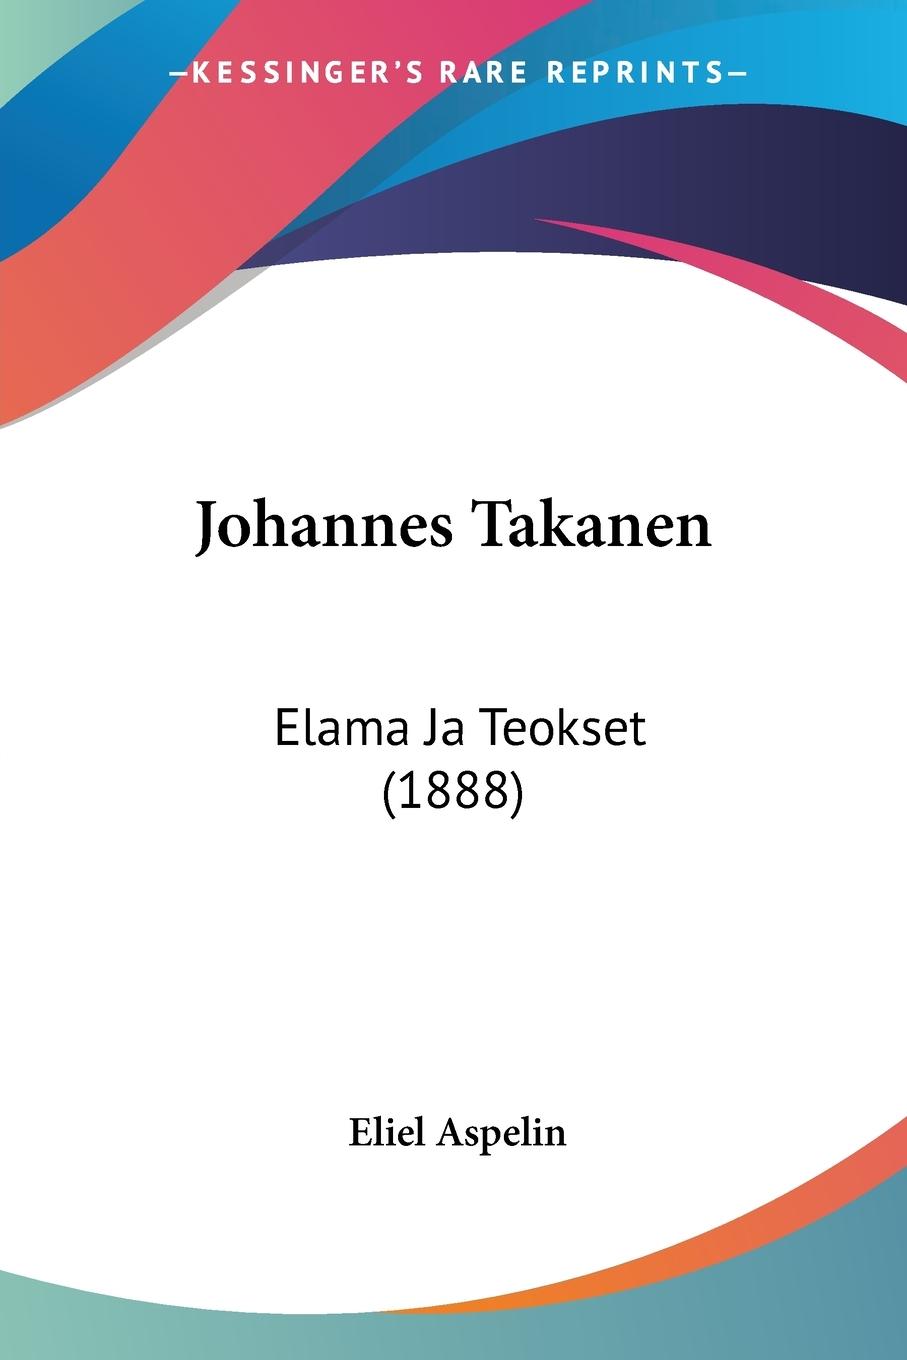 Johannes Takanen - Aspelin, Eliel